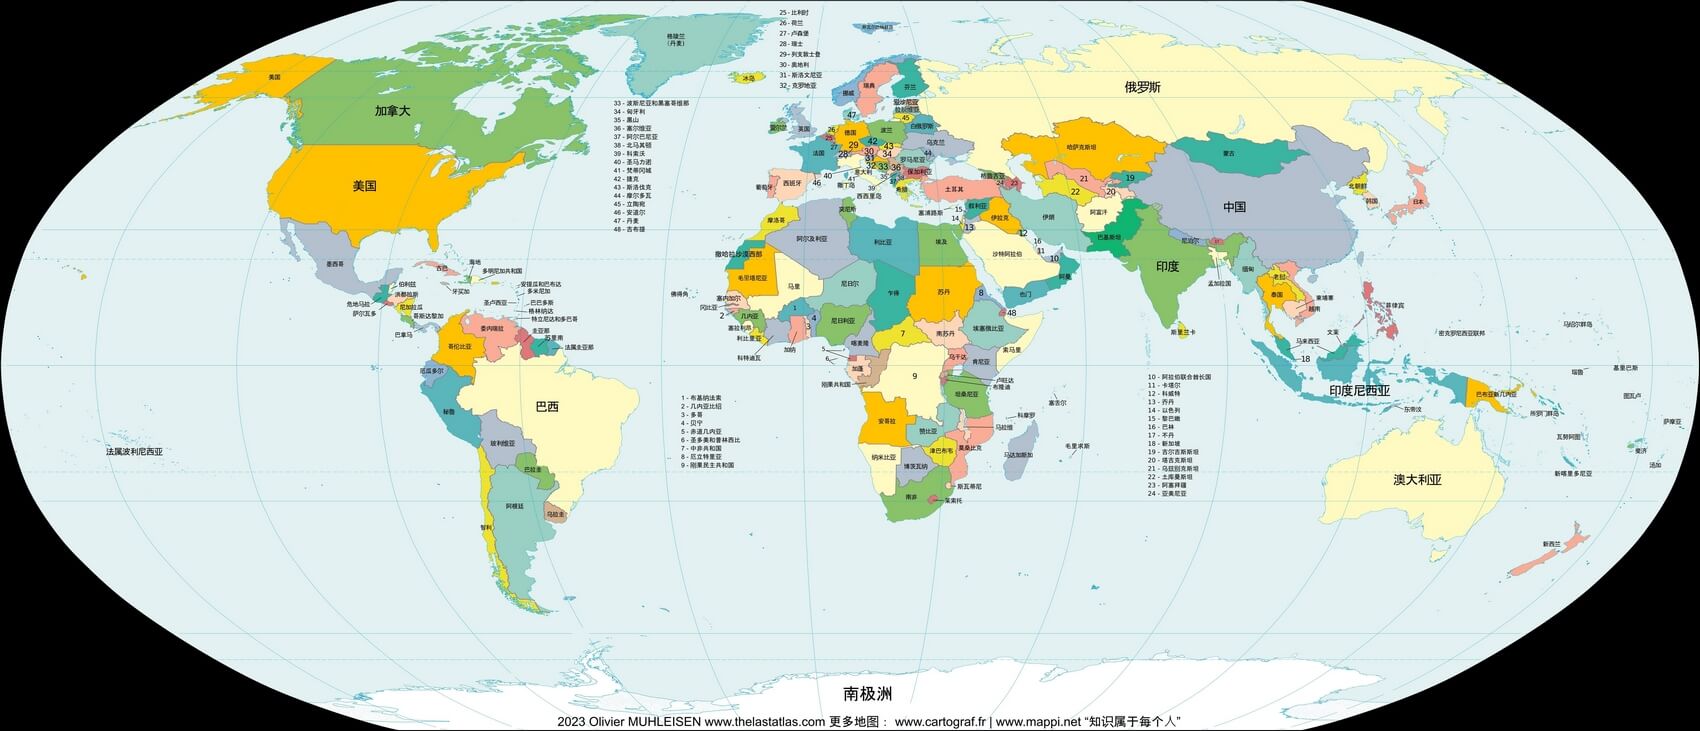 Weltkarte Ländern Chinesisch